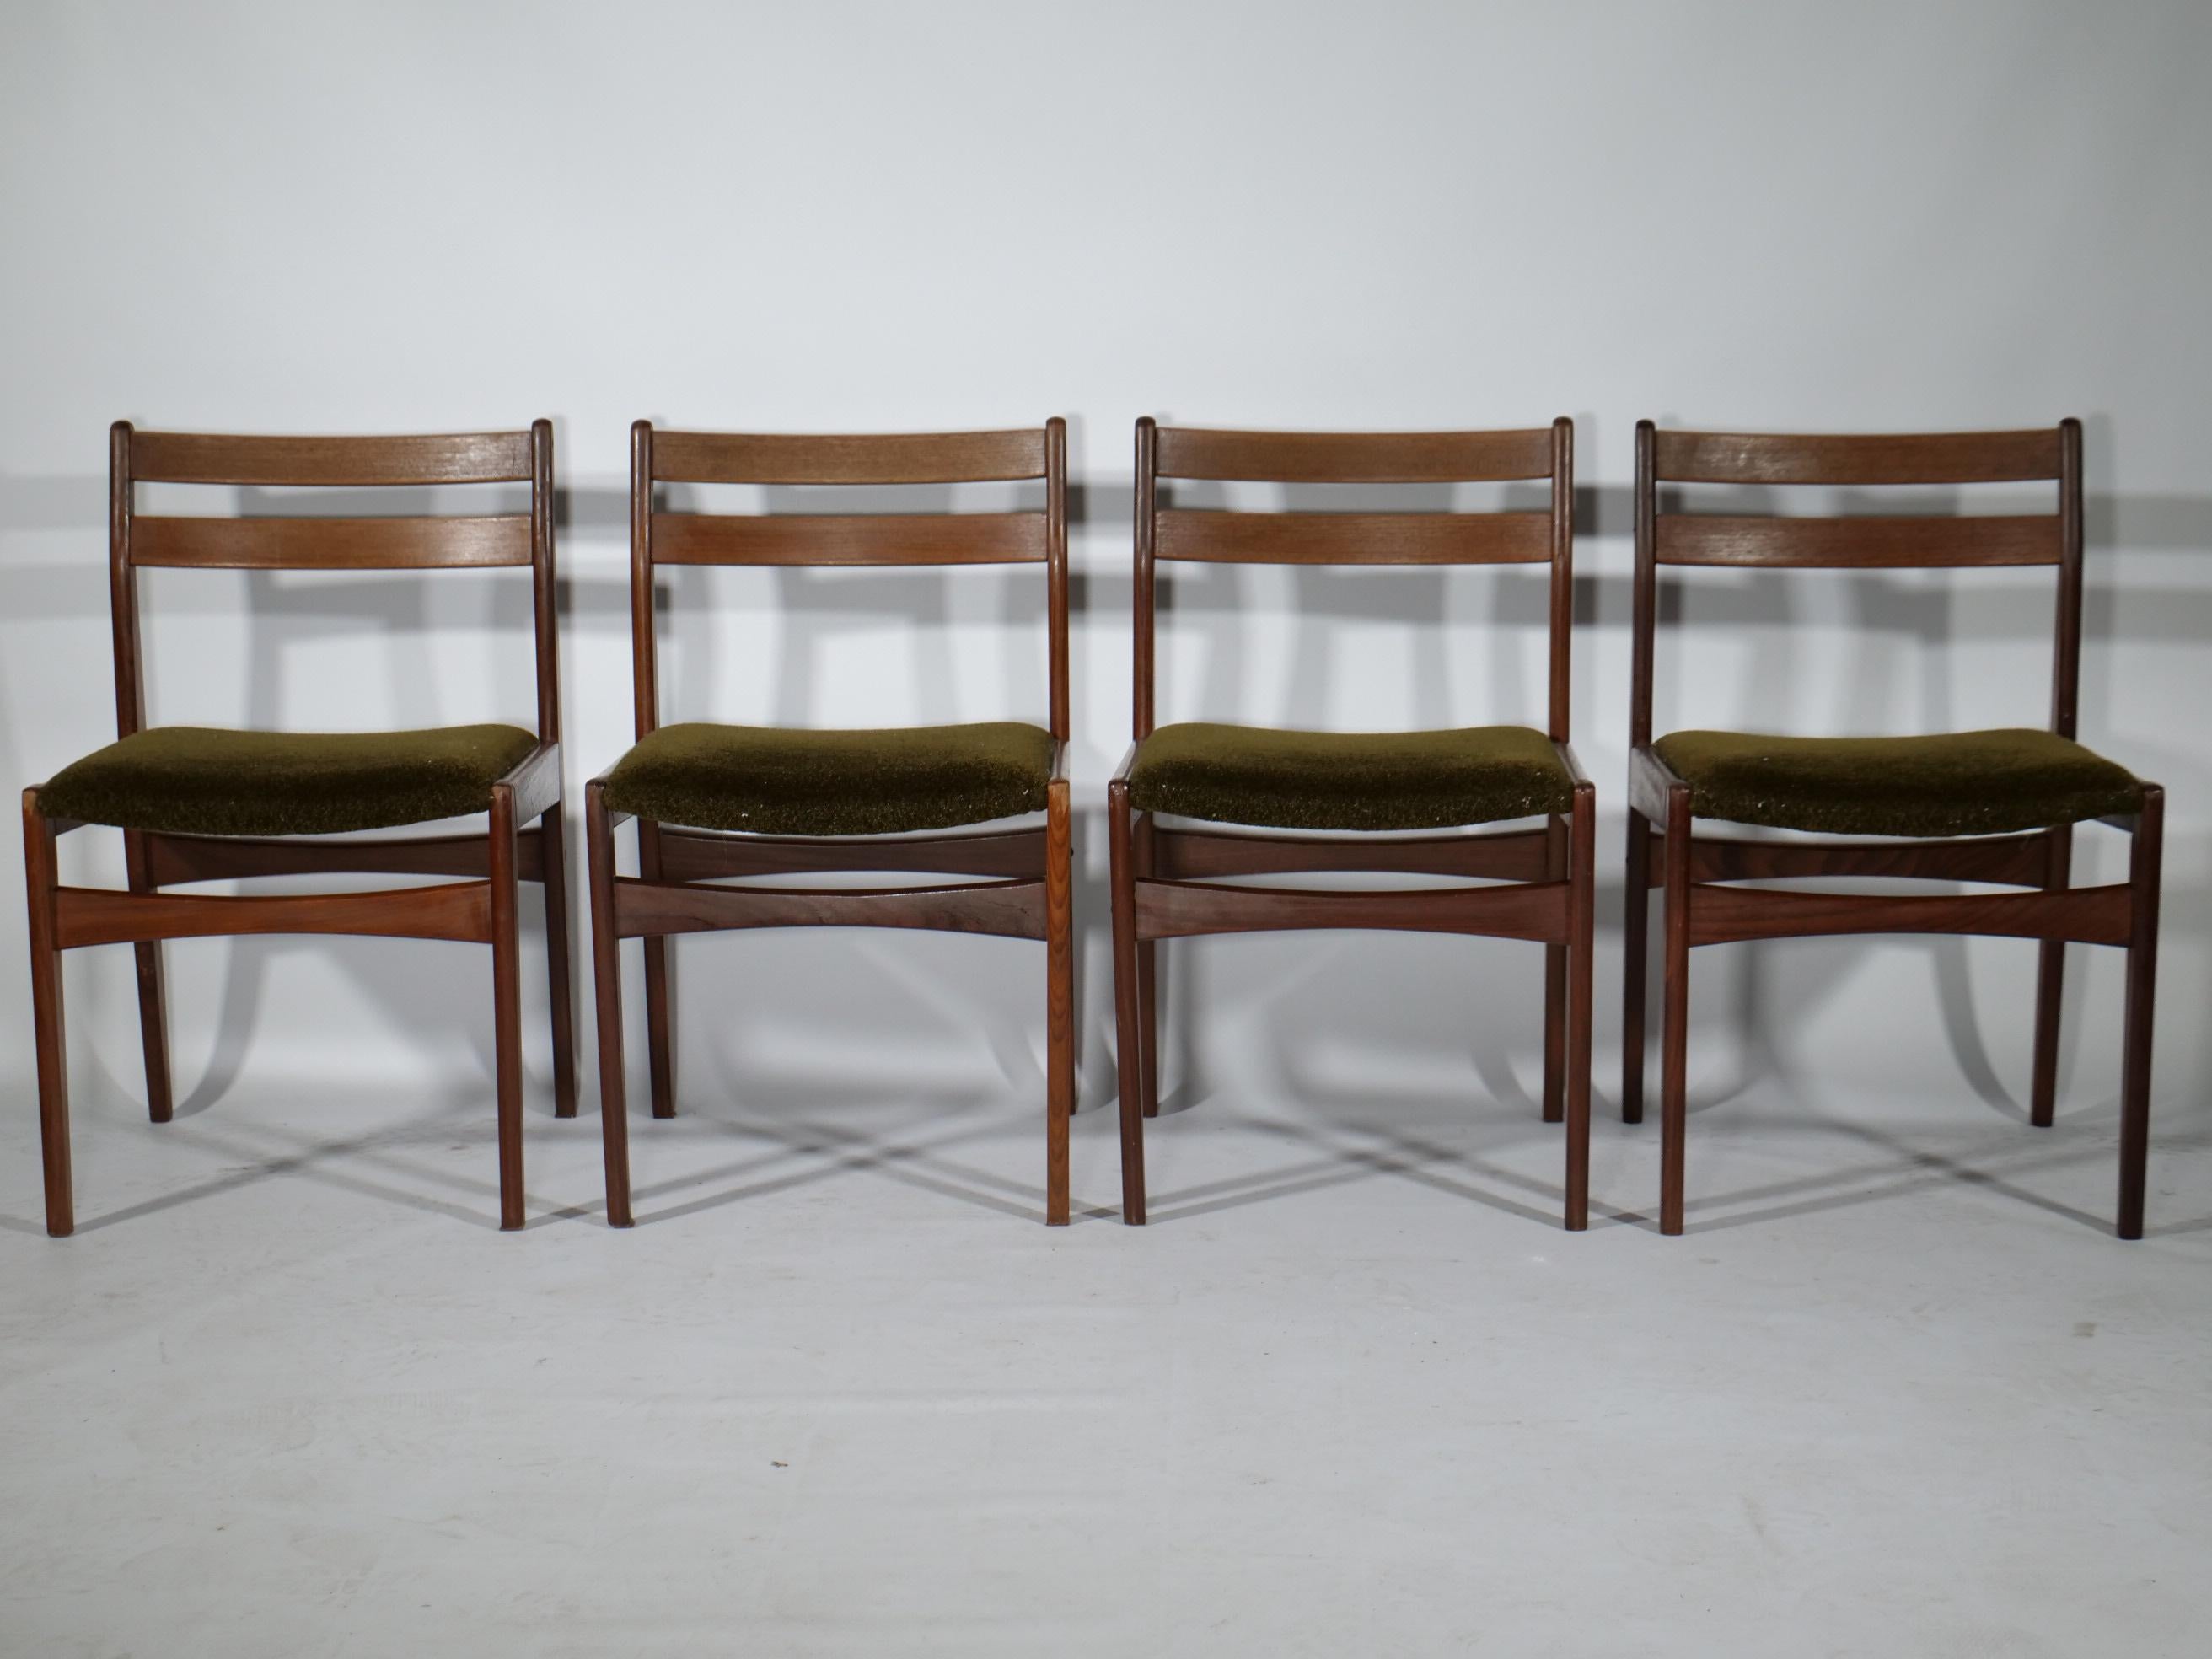 Dieser Satz von vier Esszimmerstühlen wurde in den 1960er Jahren von Frem Røjle in Dänemark hergestellt. Sie sind aus dunklem, massivem Teakholz gefertigt und mit Waldgrünem Stoff bezogen. Alle Stühle sind in einem guten Zustand mit kleineren